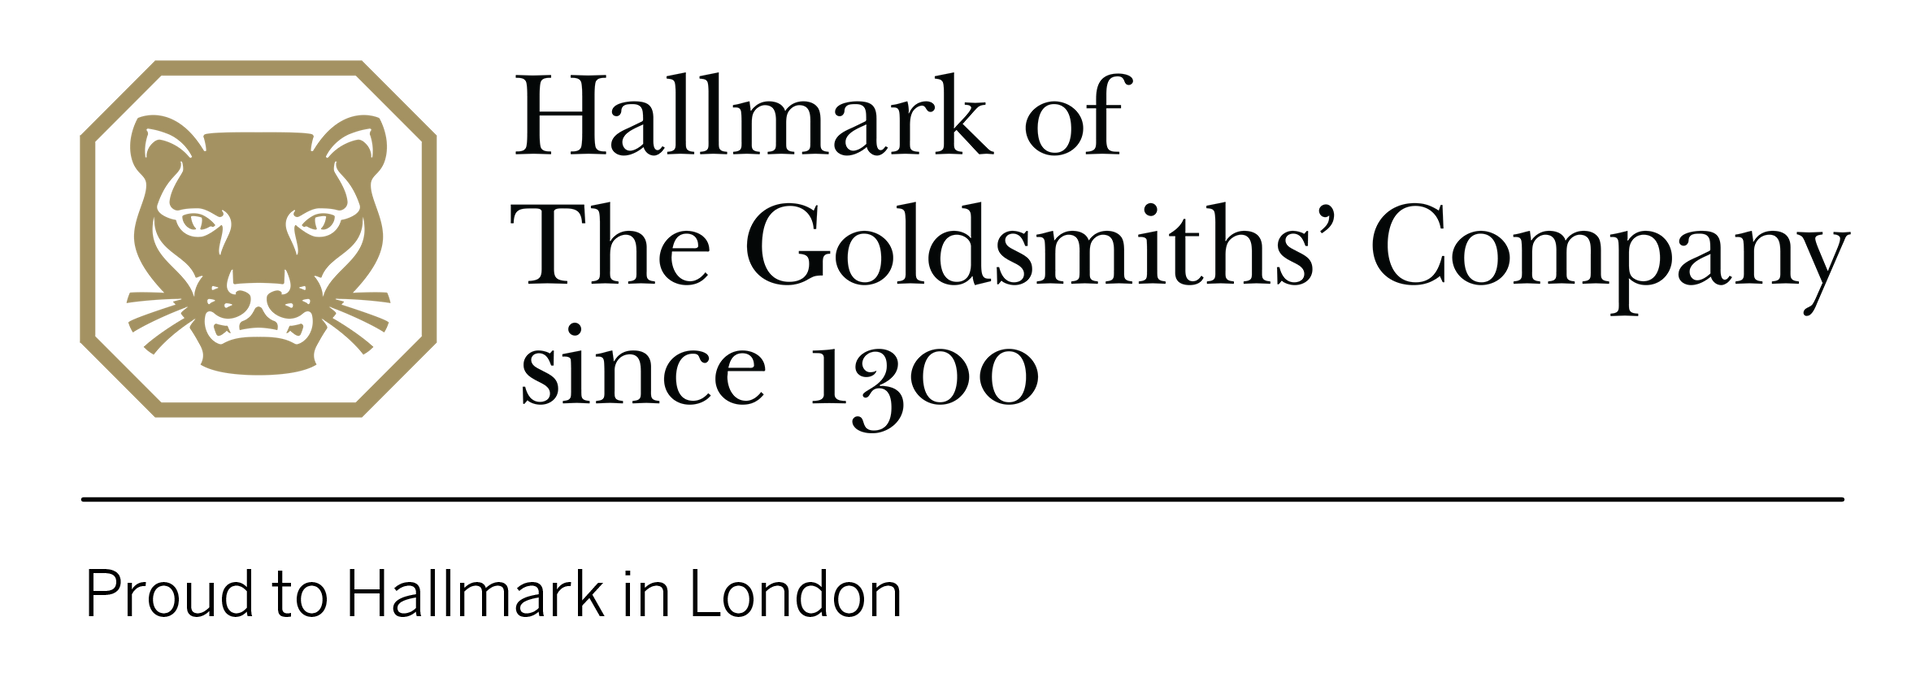 Goldsmiths Logo